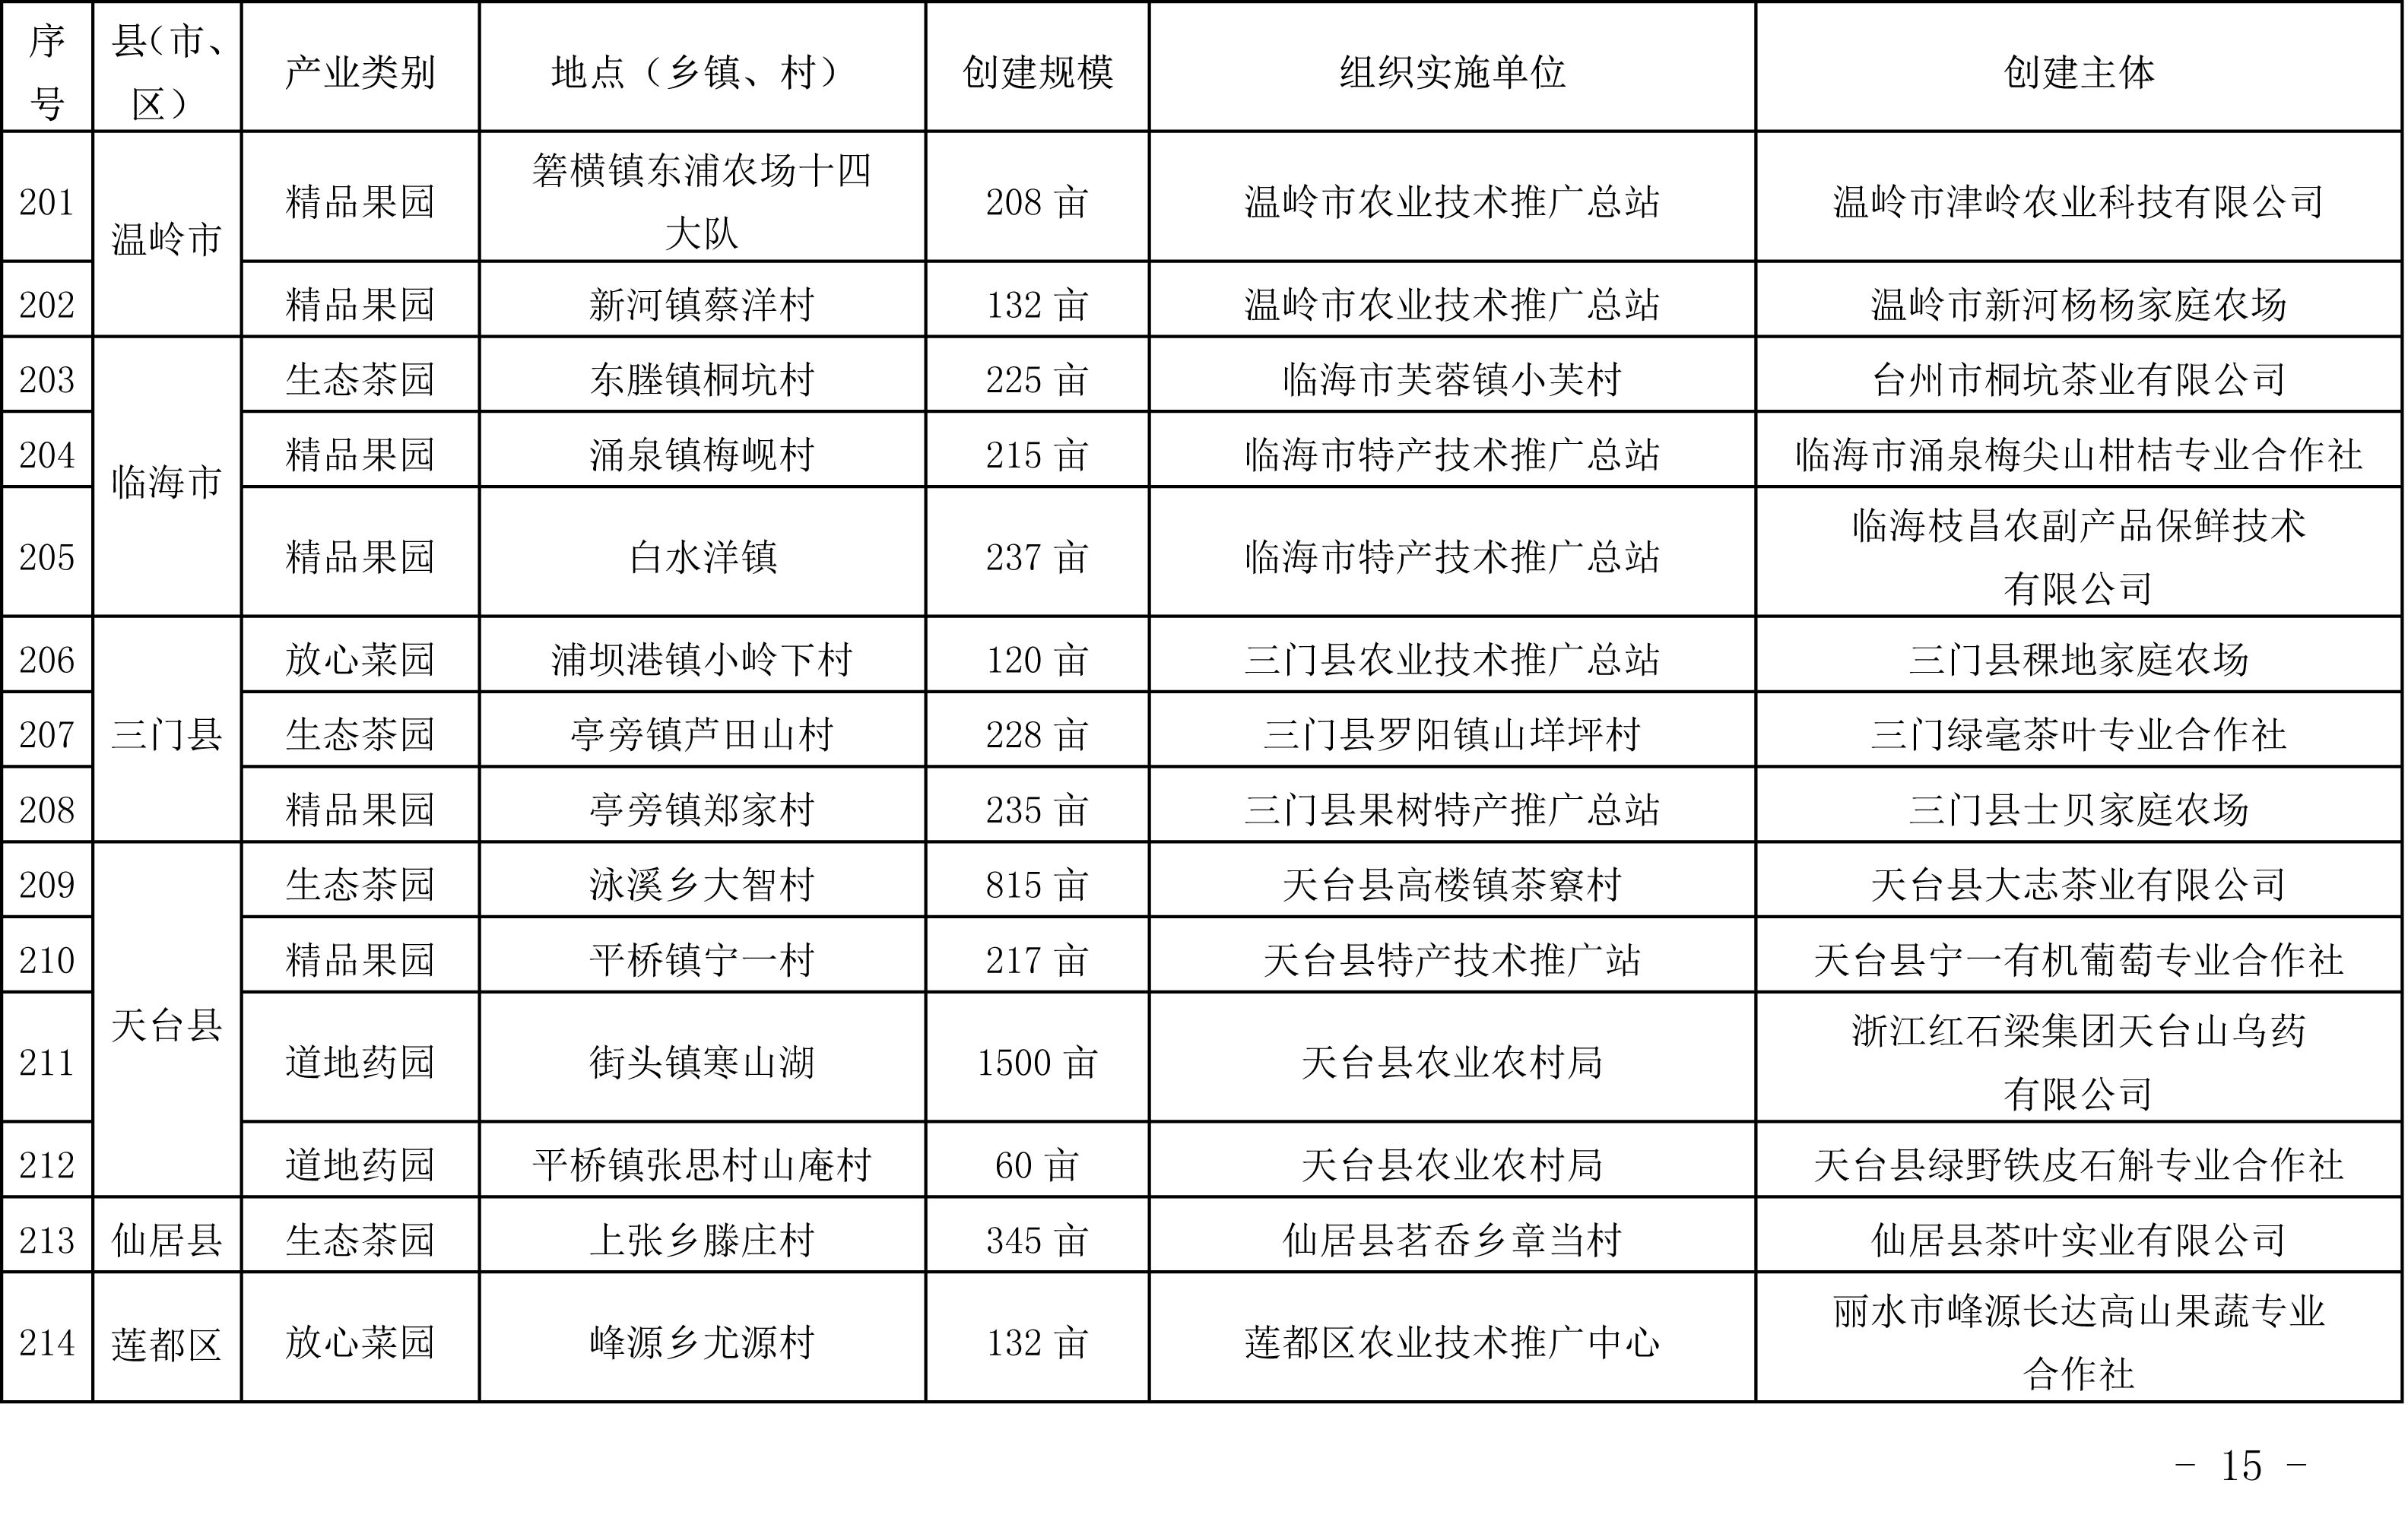 浙江省农业农村厅关于公布2019年度种植业“五园”创建省级示范基地名单的通知(图14)